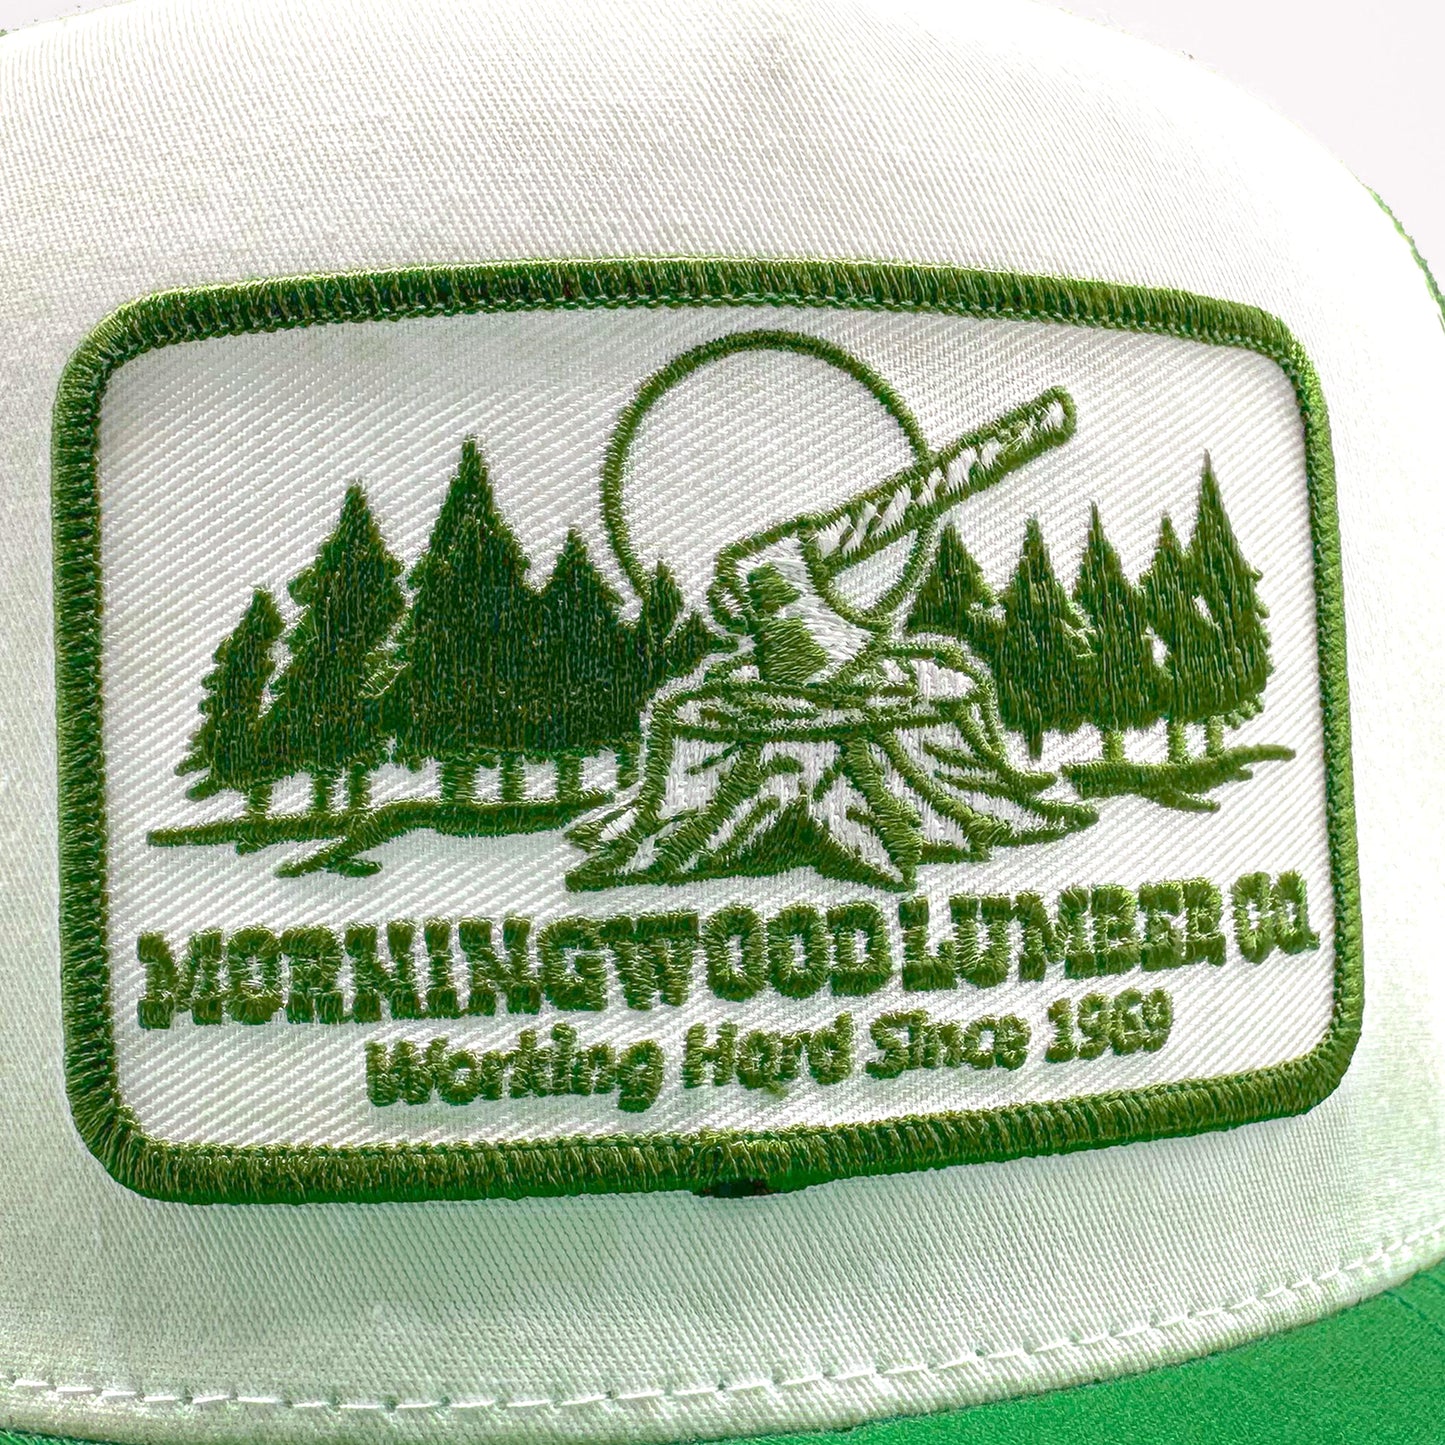 Morningwood Lumber Trucker Hat